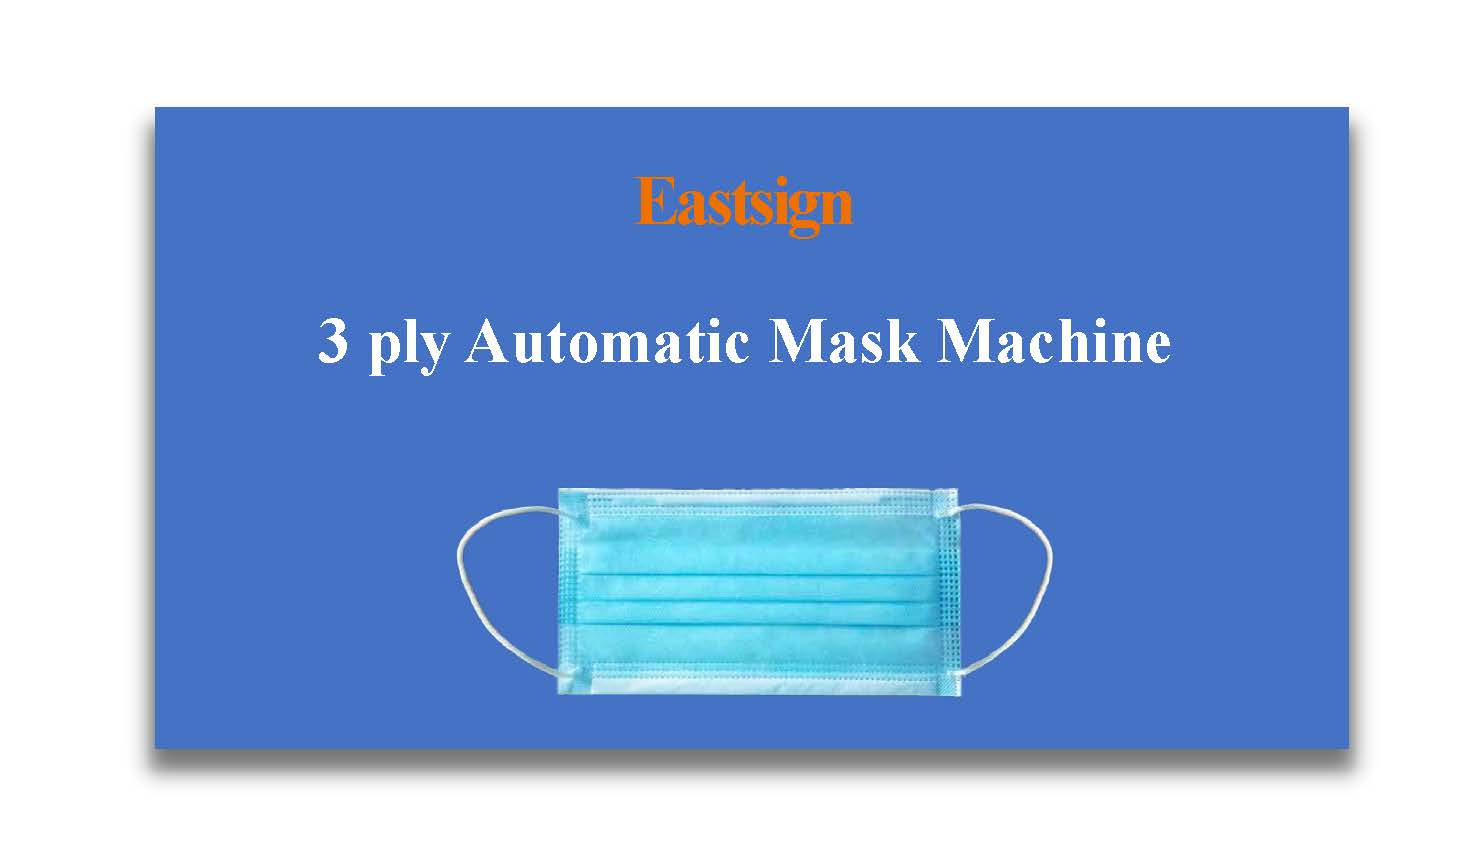 3 ply Automatic Mask Machine